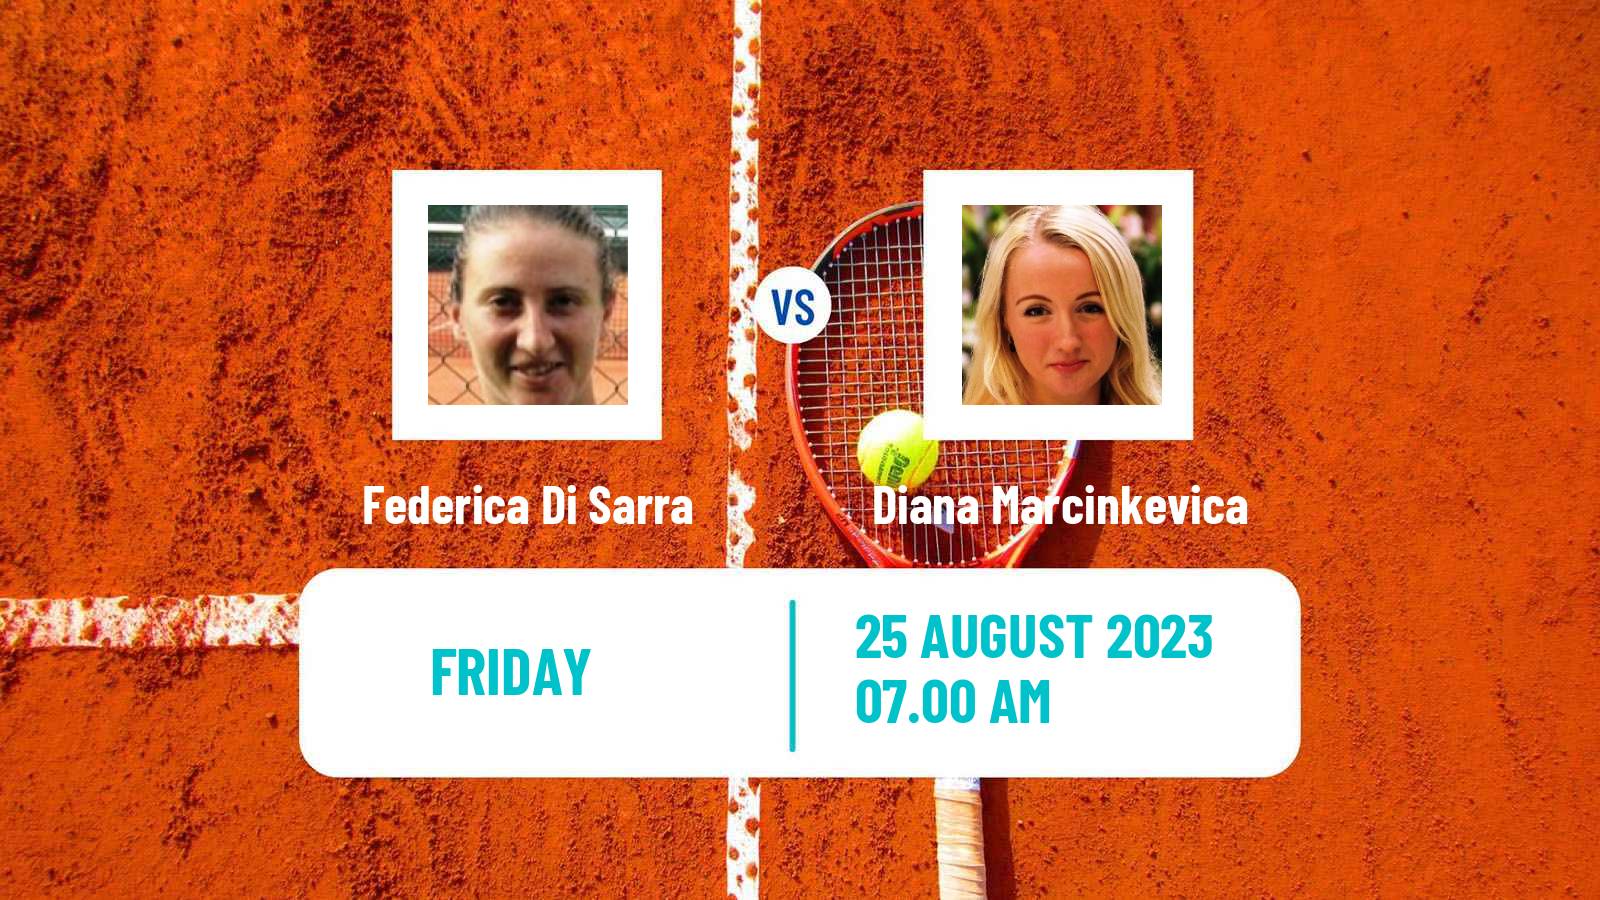 Tennis ITF W25 Verbier Women Federica Di Sarra - Diana Marcinkevica